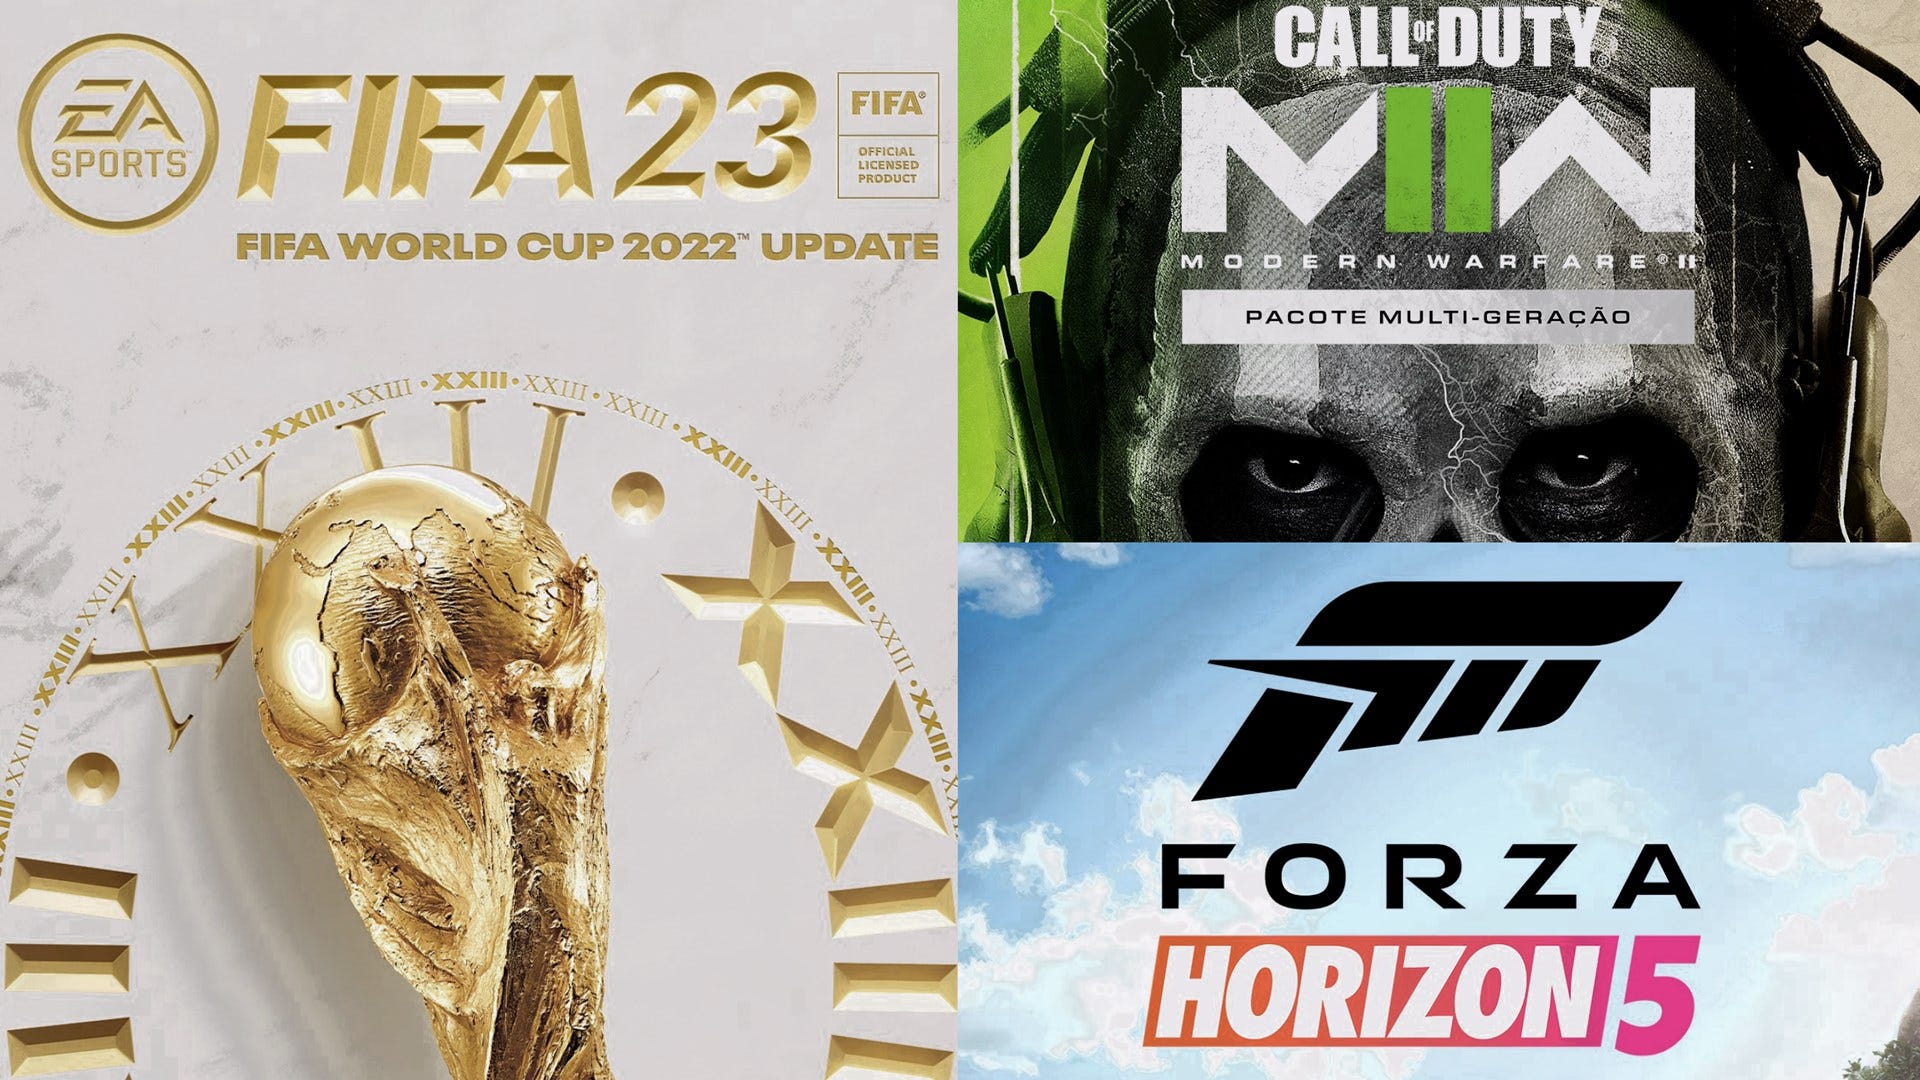 Os melhores jogos gratuitos do Xbox Series em 2023